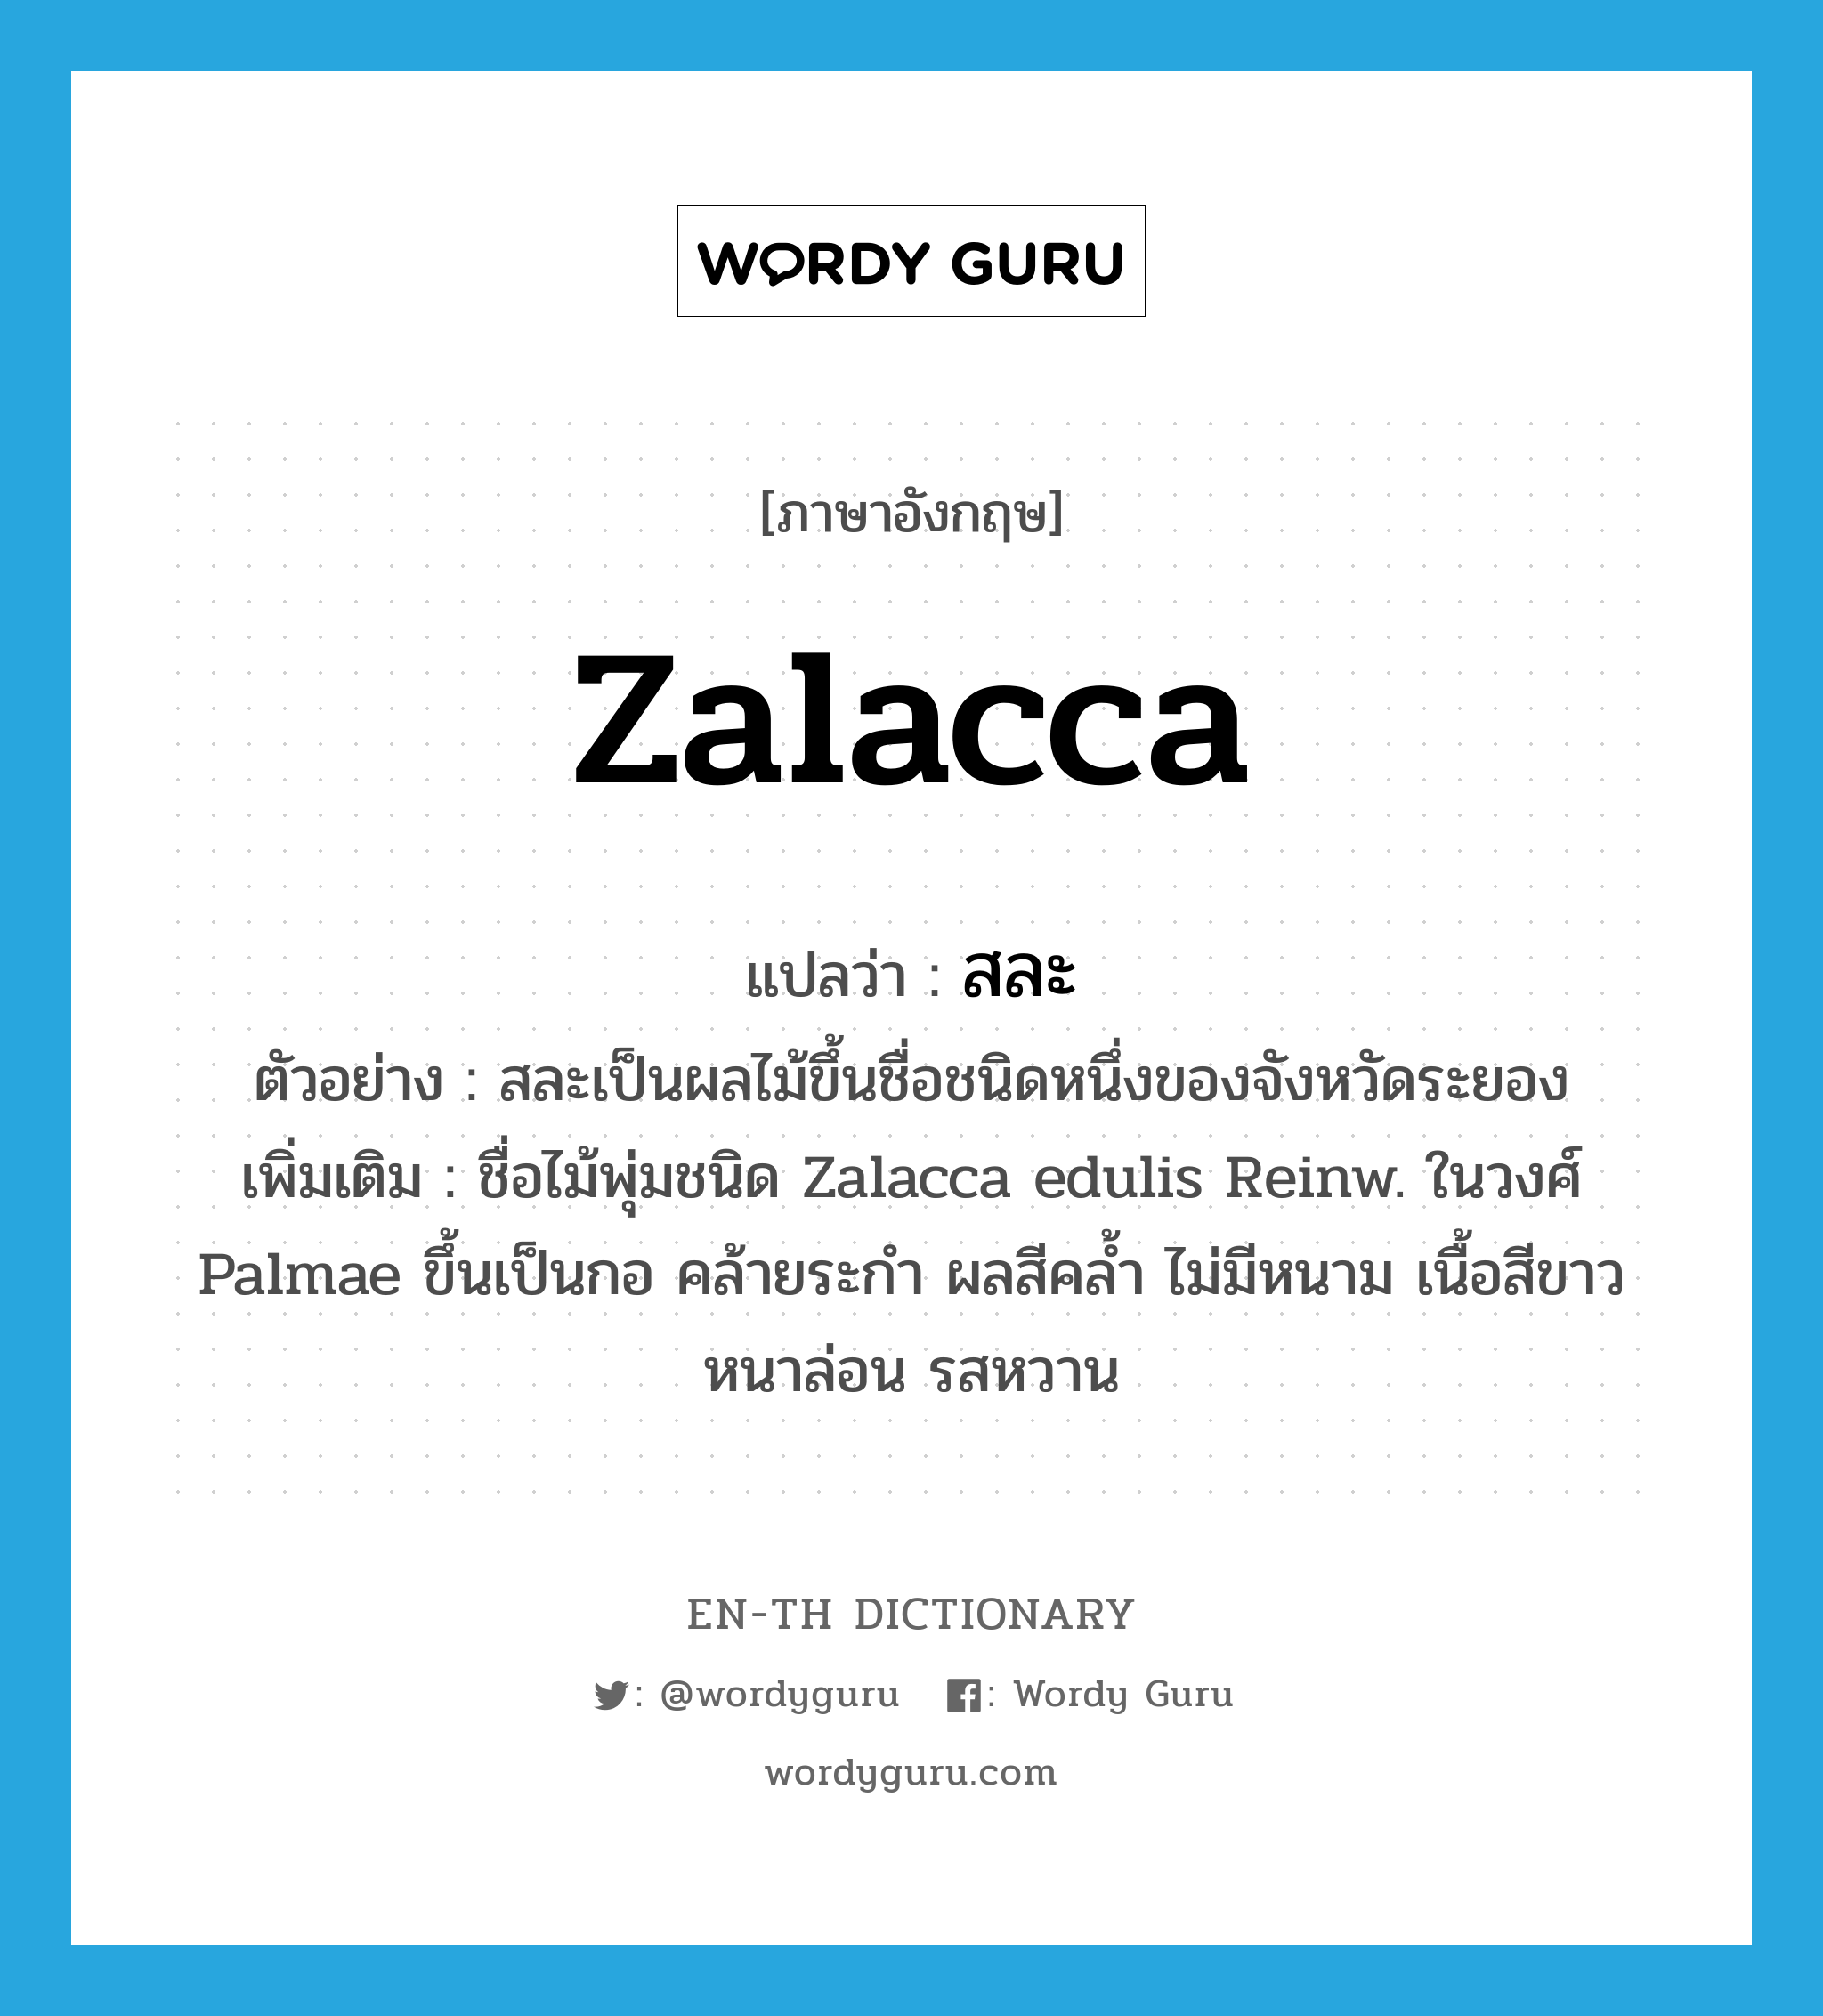 สละ ภาษาอังกฤษ?, คำศัพท์ภาษาอังกฤษ สละ แปลว่า Zalacca ประเภท N ตัวอย่าง สละเป็นผลไม้ขึ้นชื่อชนิดหนึ่งของจังหวัดระยอง เพิ่มเติม ชื่อไม้พุ่มชนิด Zalacca edulis Reinw. ในวงศ์ Palmae ขึ้นเป็นกอ คล้ายระกำ ผลสีคล้ำ ไม่มีหนาม เนื้อสีขาวหนาล่อน รสหวาน หมวด N